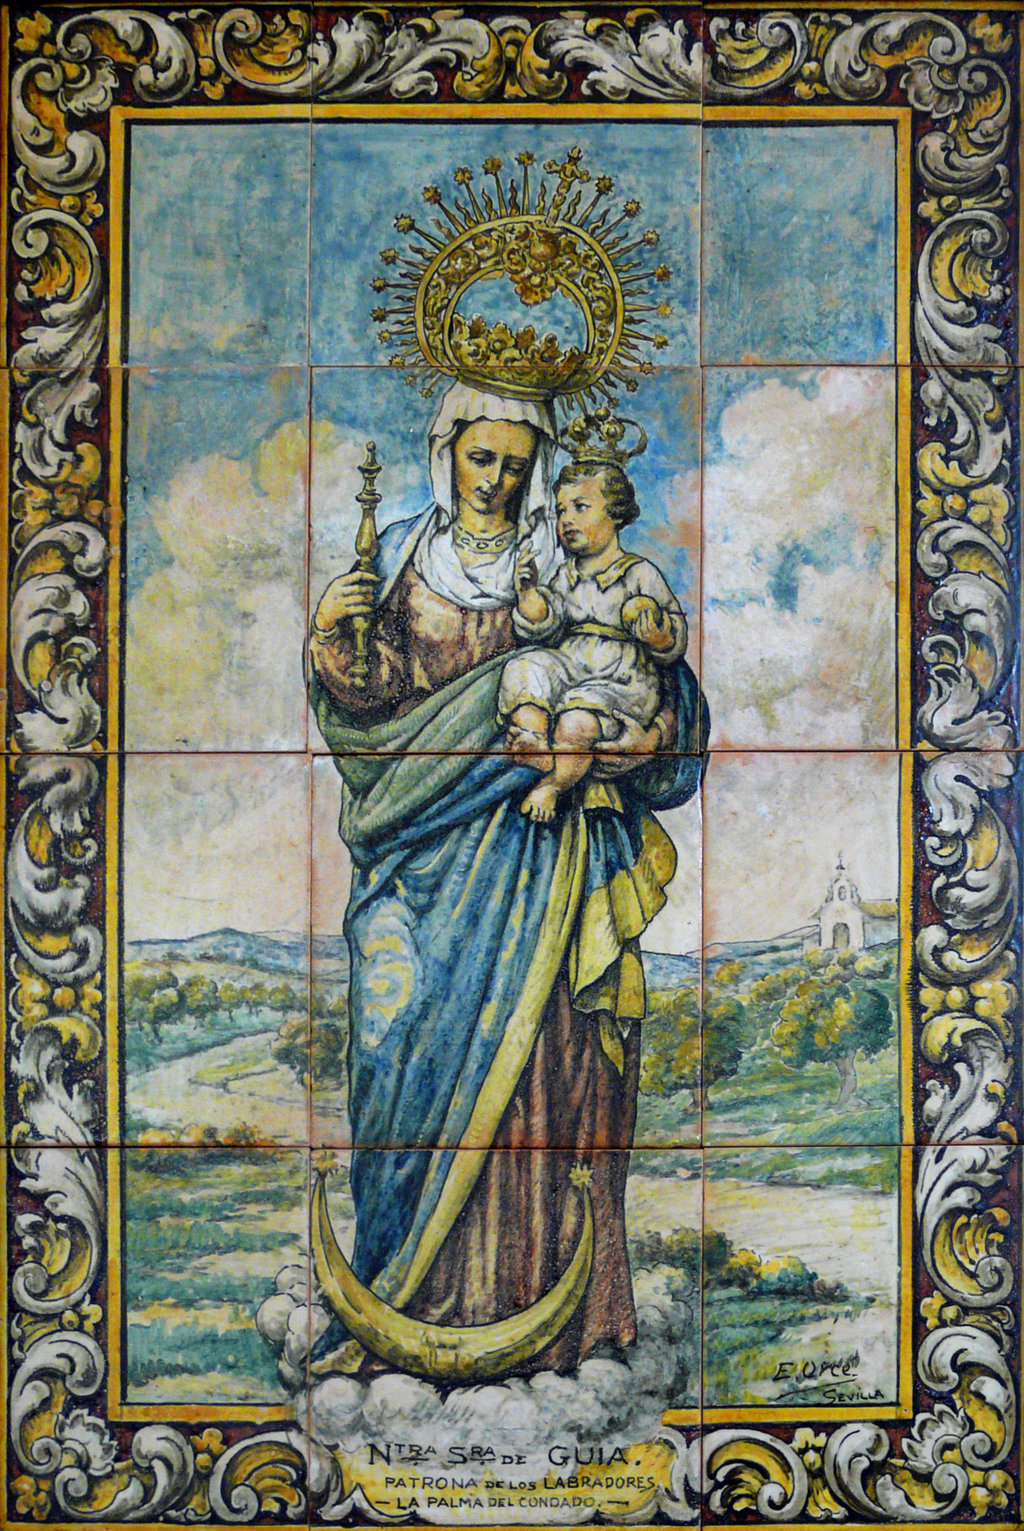 00197. Retablo cerámico. Virgen de Guía. Cámara Agraria. La Palma del Condado. Huelva.